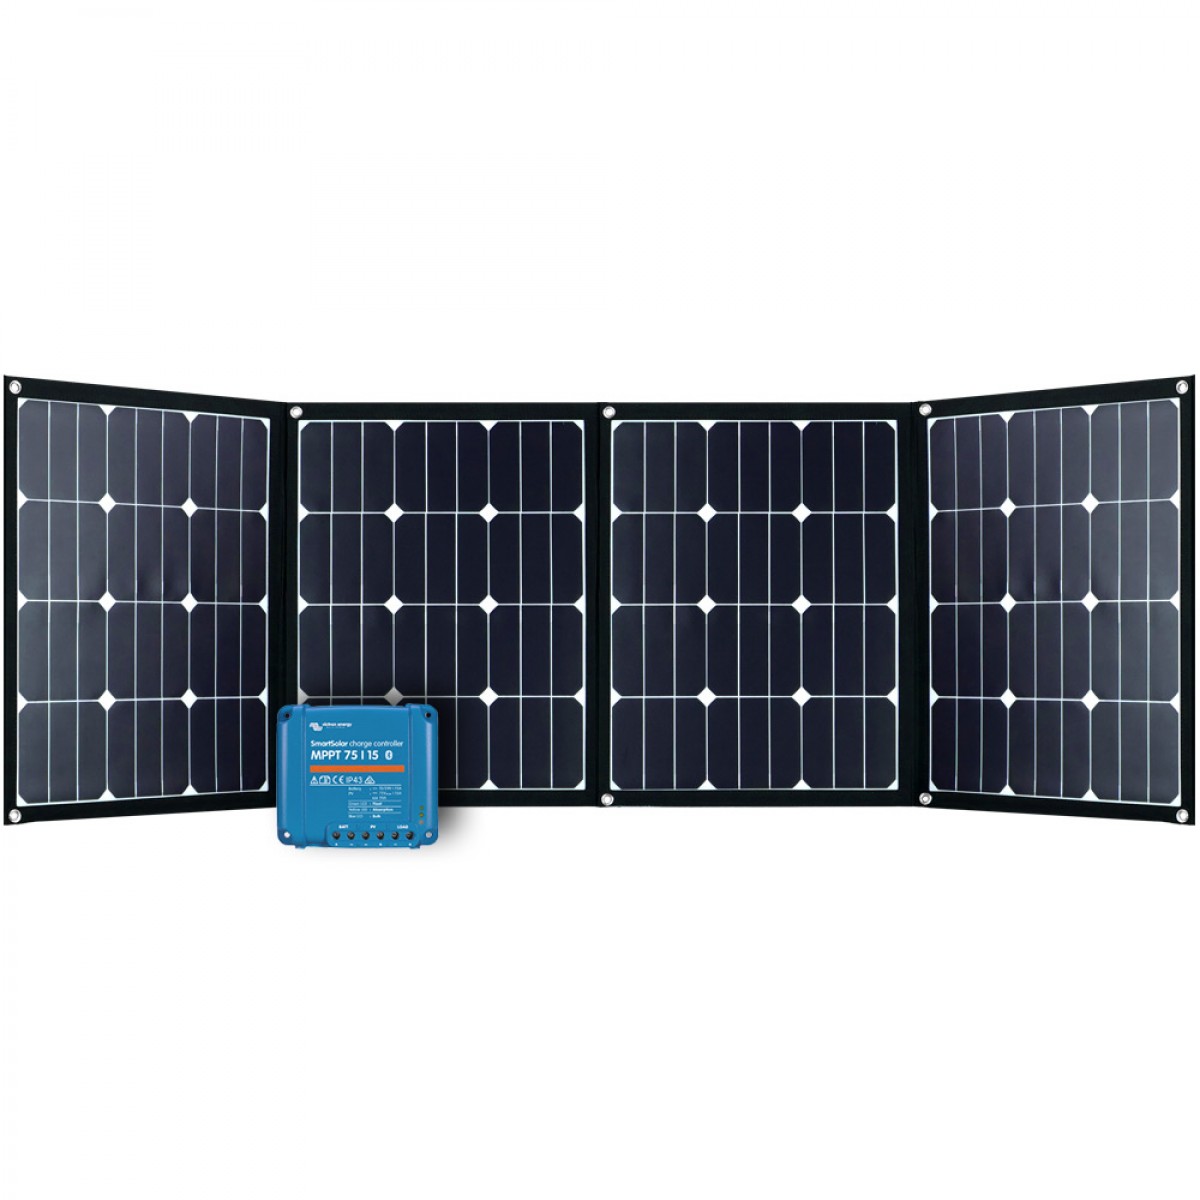 https://www.solar-autark.com/images/product_images/original_images/160w-solarmodul-faltbar-fsp-2-12v-mppt-smartsolar-laderegler-victron-energy-set.jpg